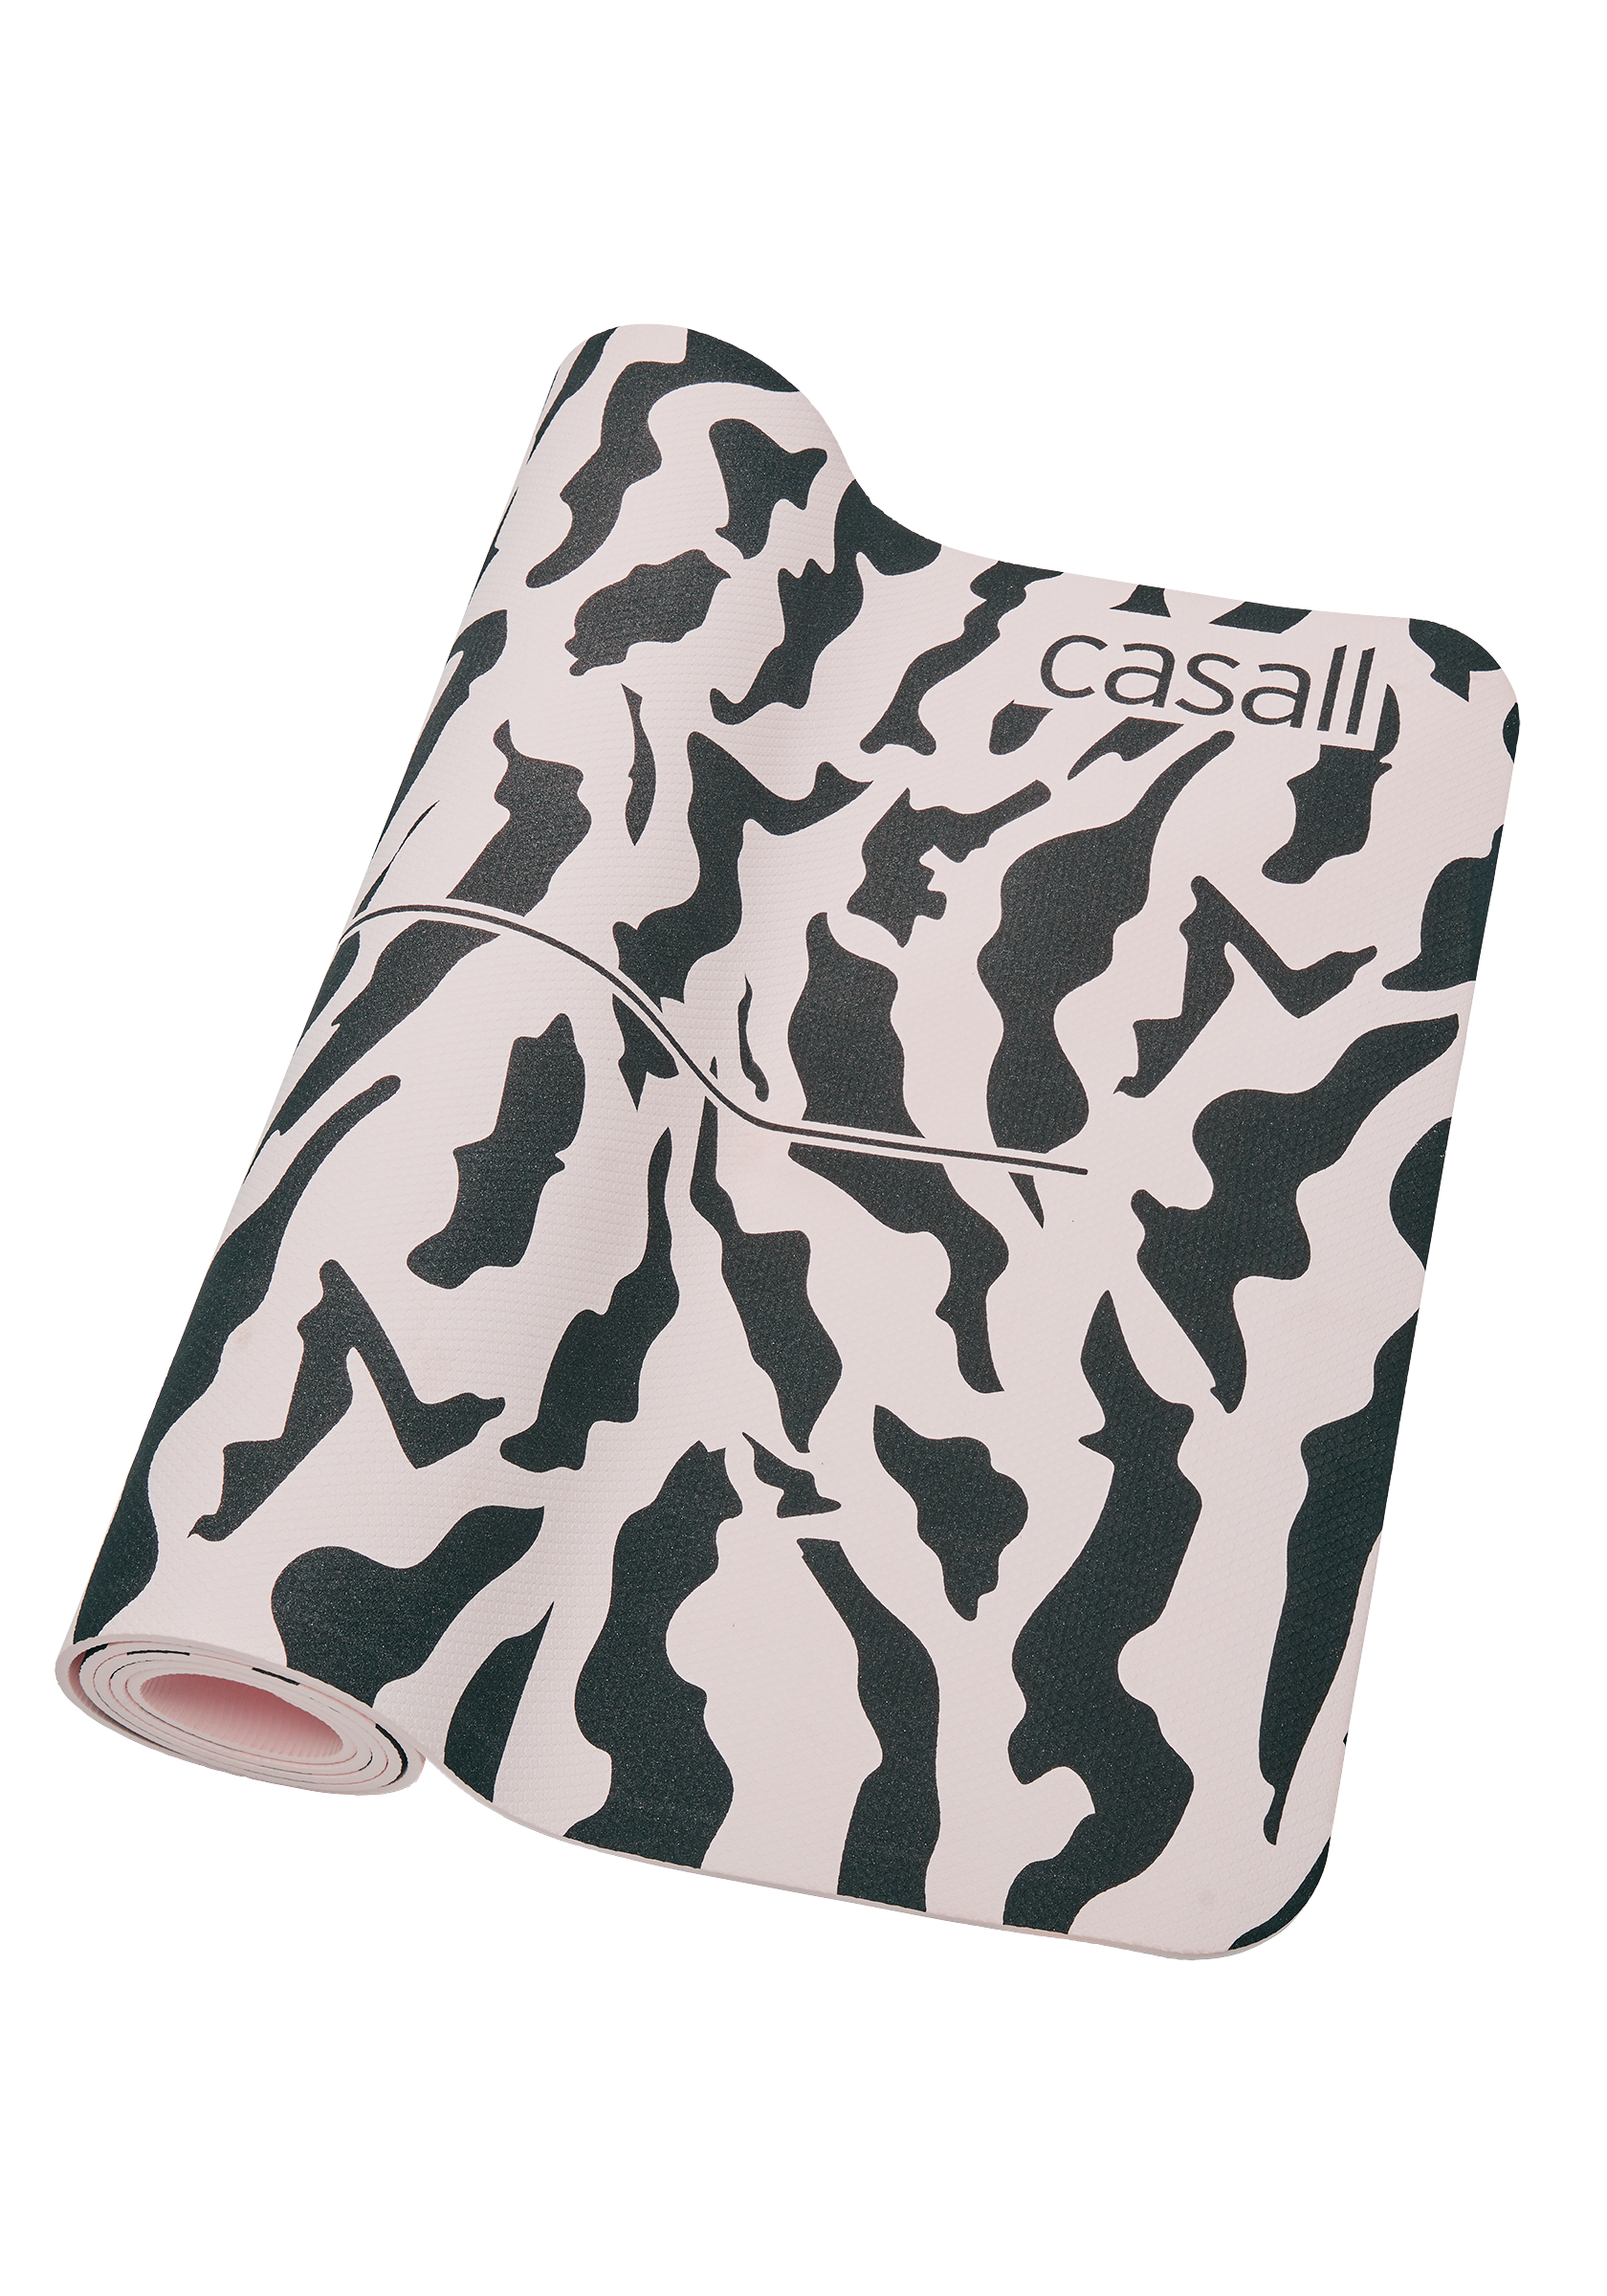 Casall exerc mat cush 5mm, Training and yoga mats